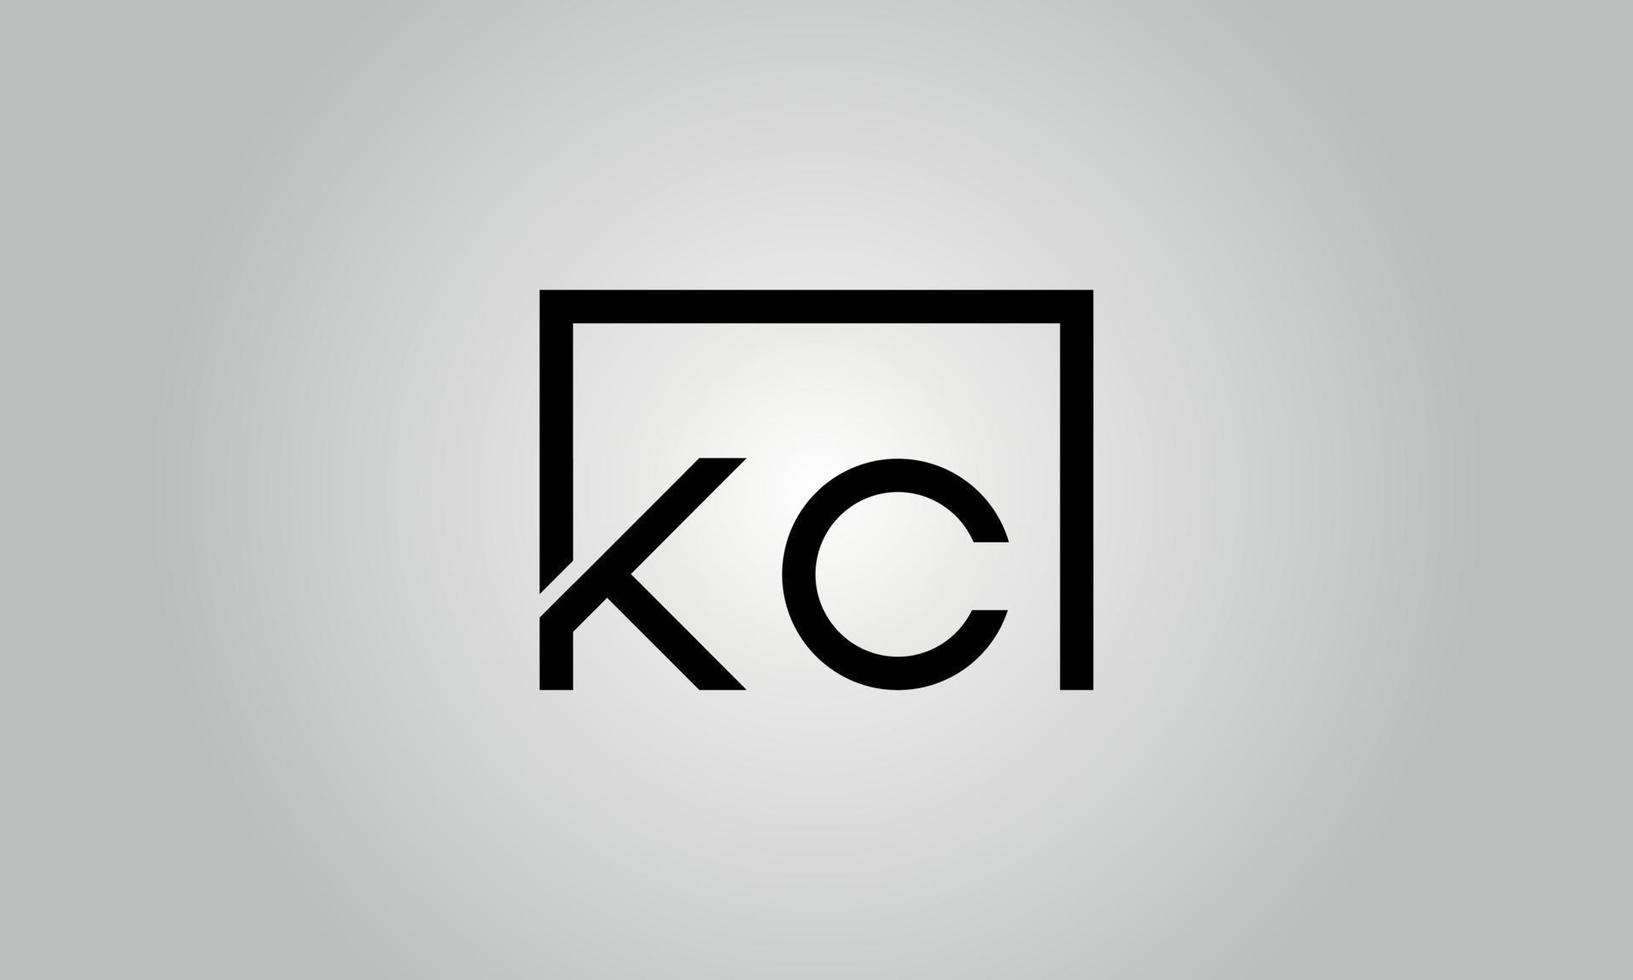 Buchstabe kc-Logo-Design. kc-Logo mit quadratischer Form in schwarzen Farben Vektor kostenlose Vektorvorlage.